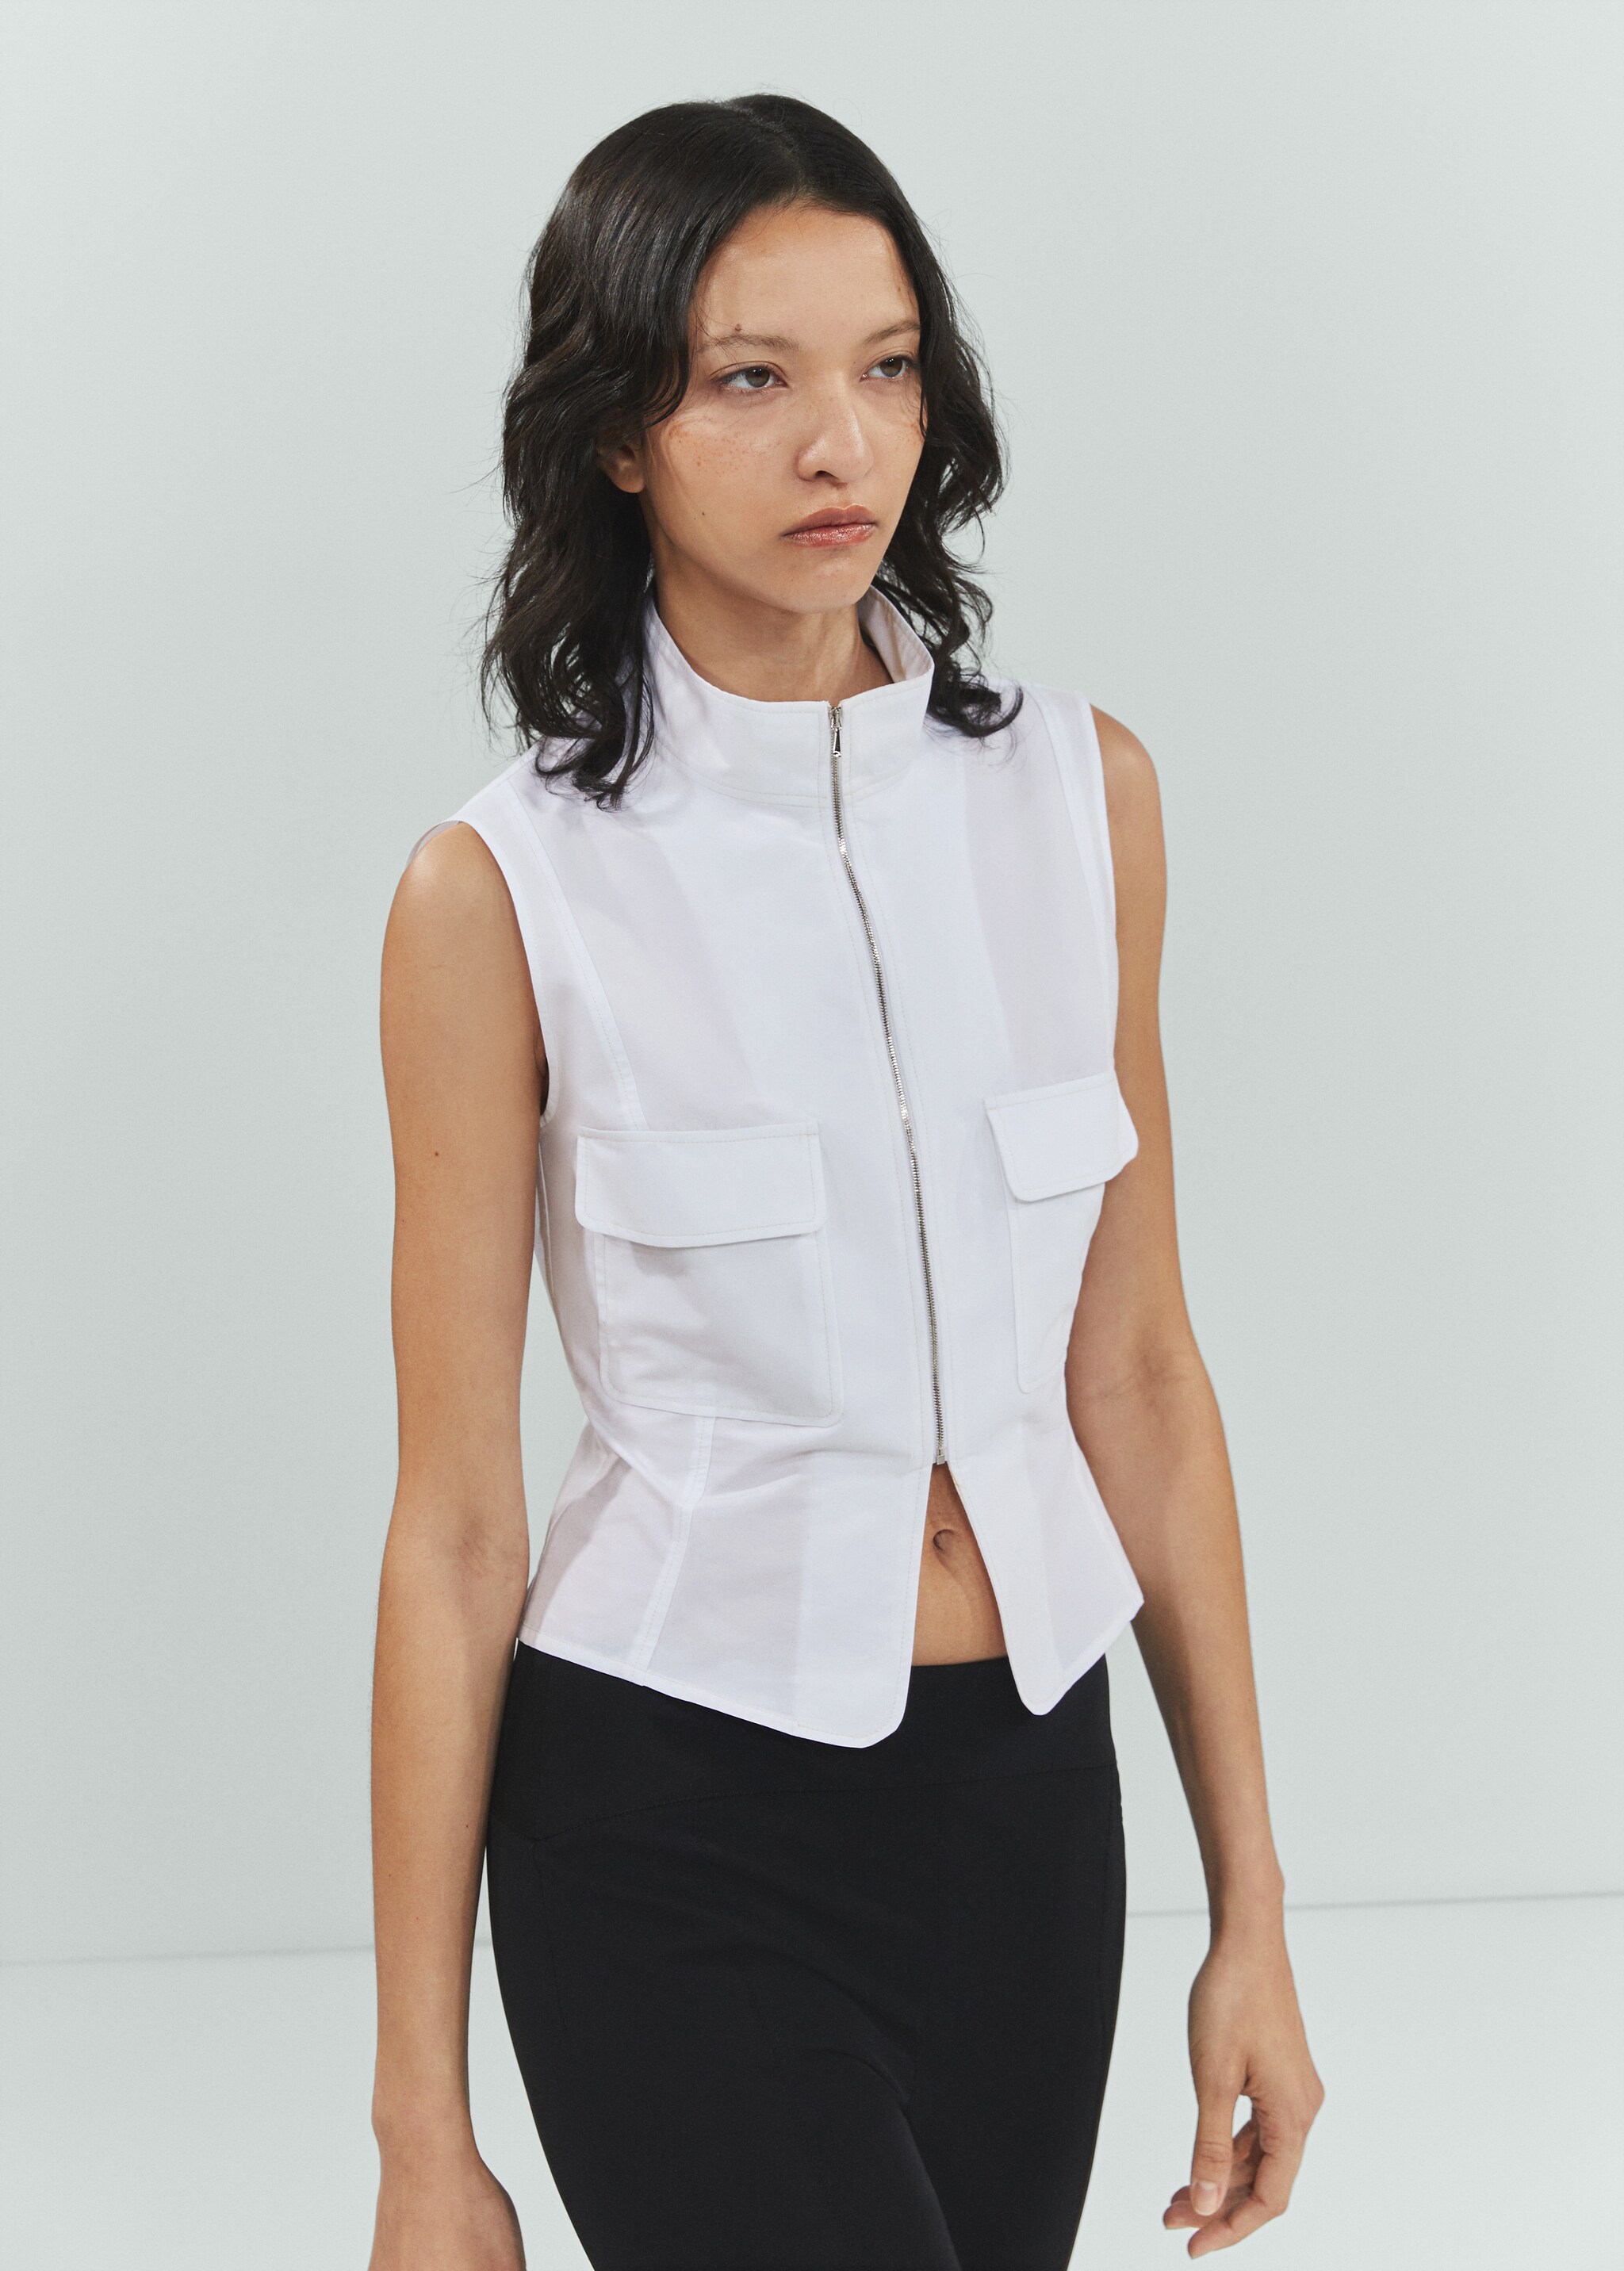 Cotton zipper sleeveless shirt - Medium plane